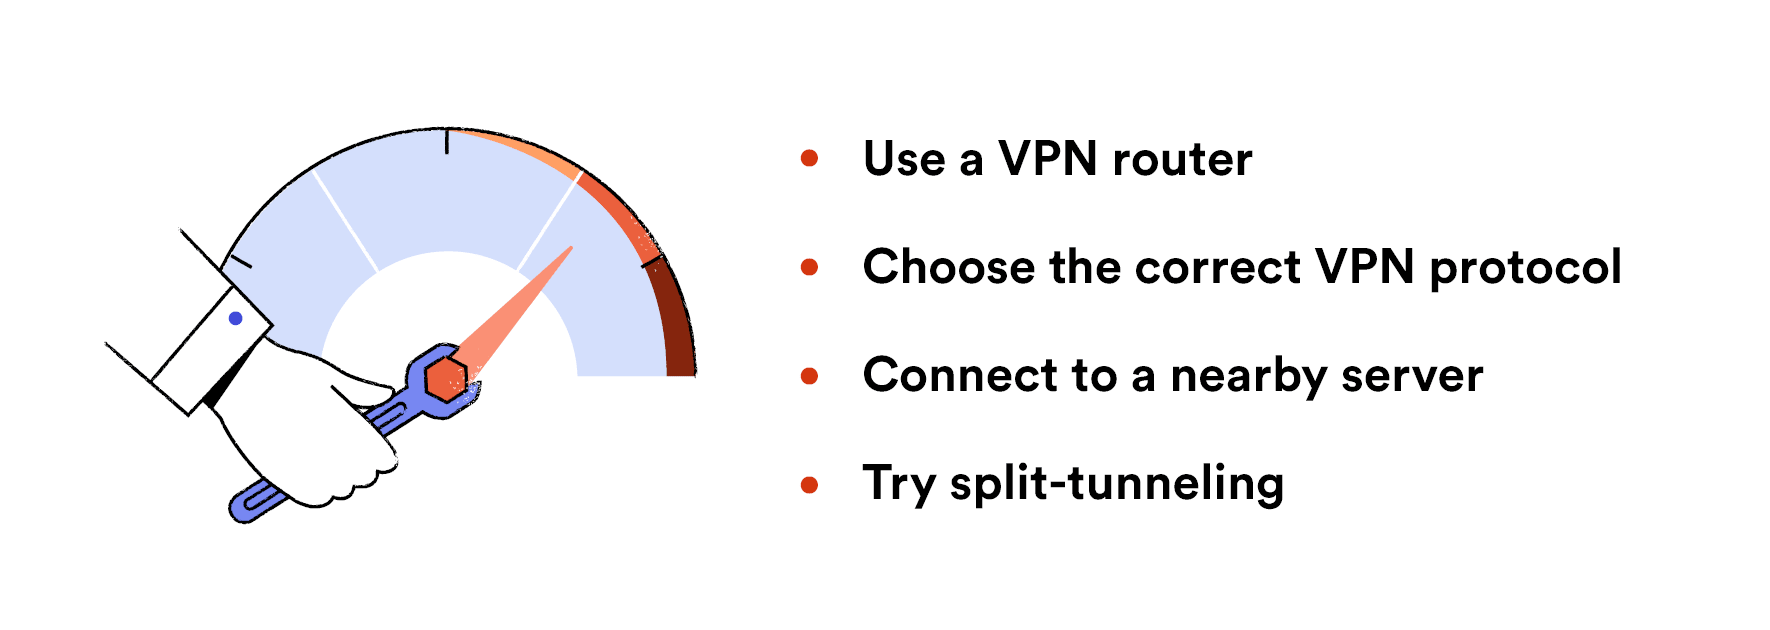 Un diagramma che spiega come si possono migliorare le velocità della propria VPN